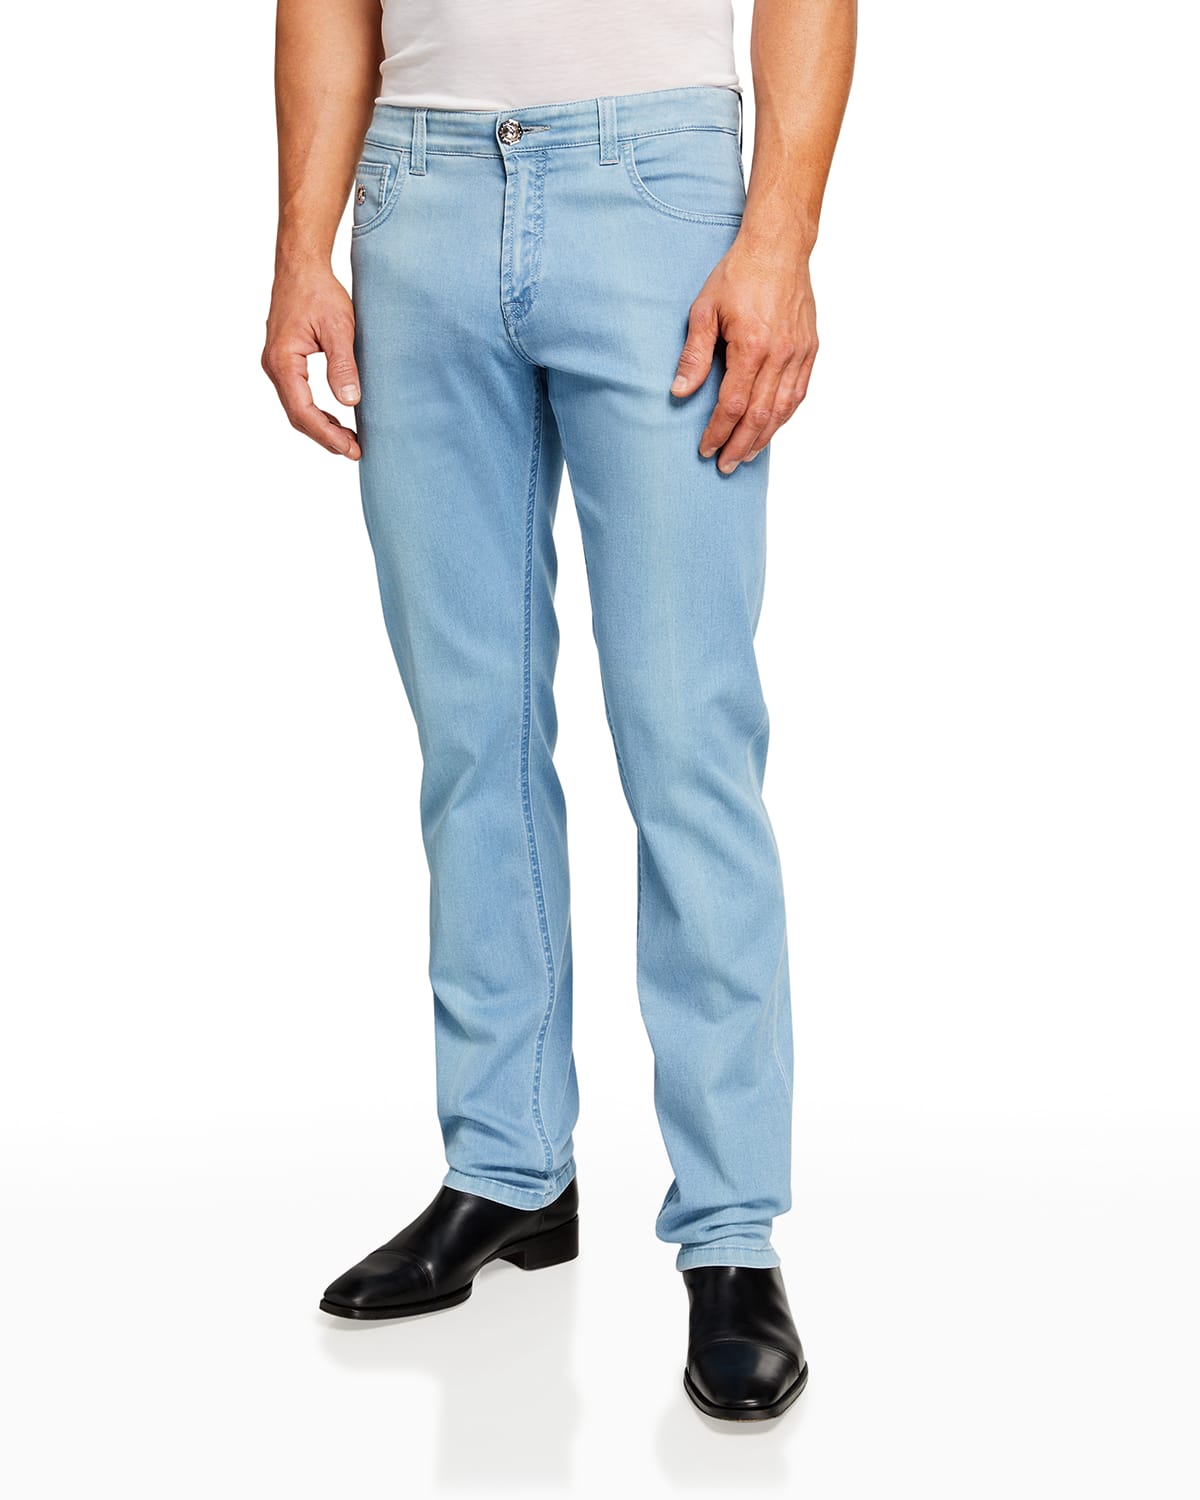 Men's Light-Wash Slim-Fit Denim Jeans